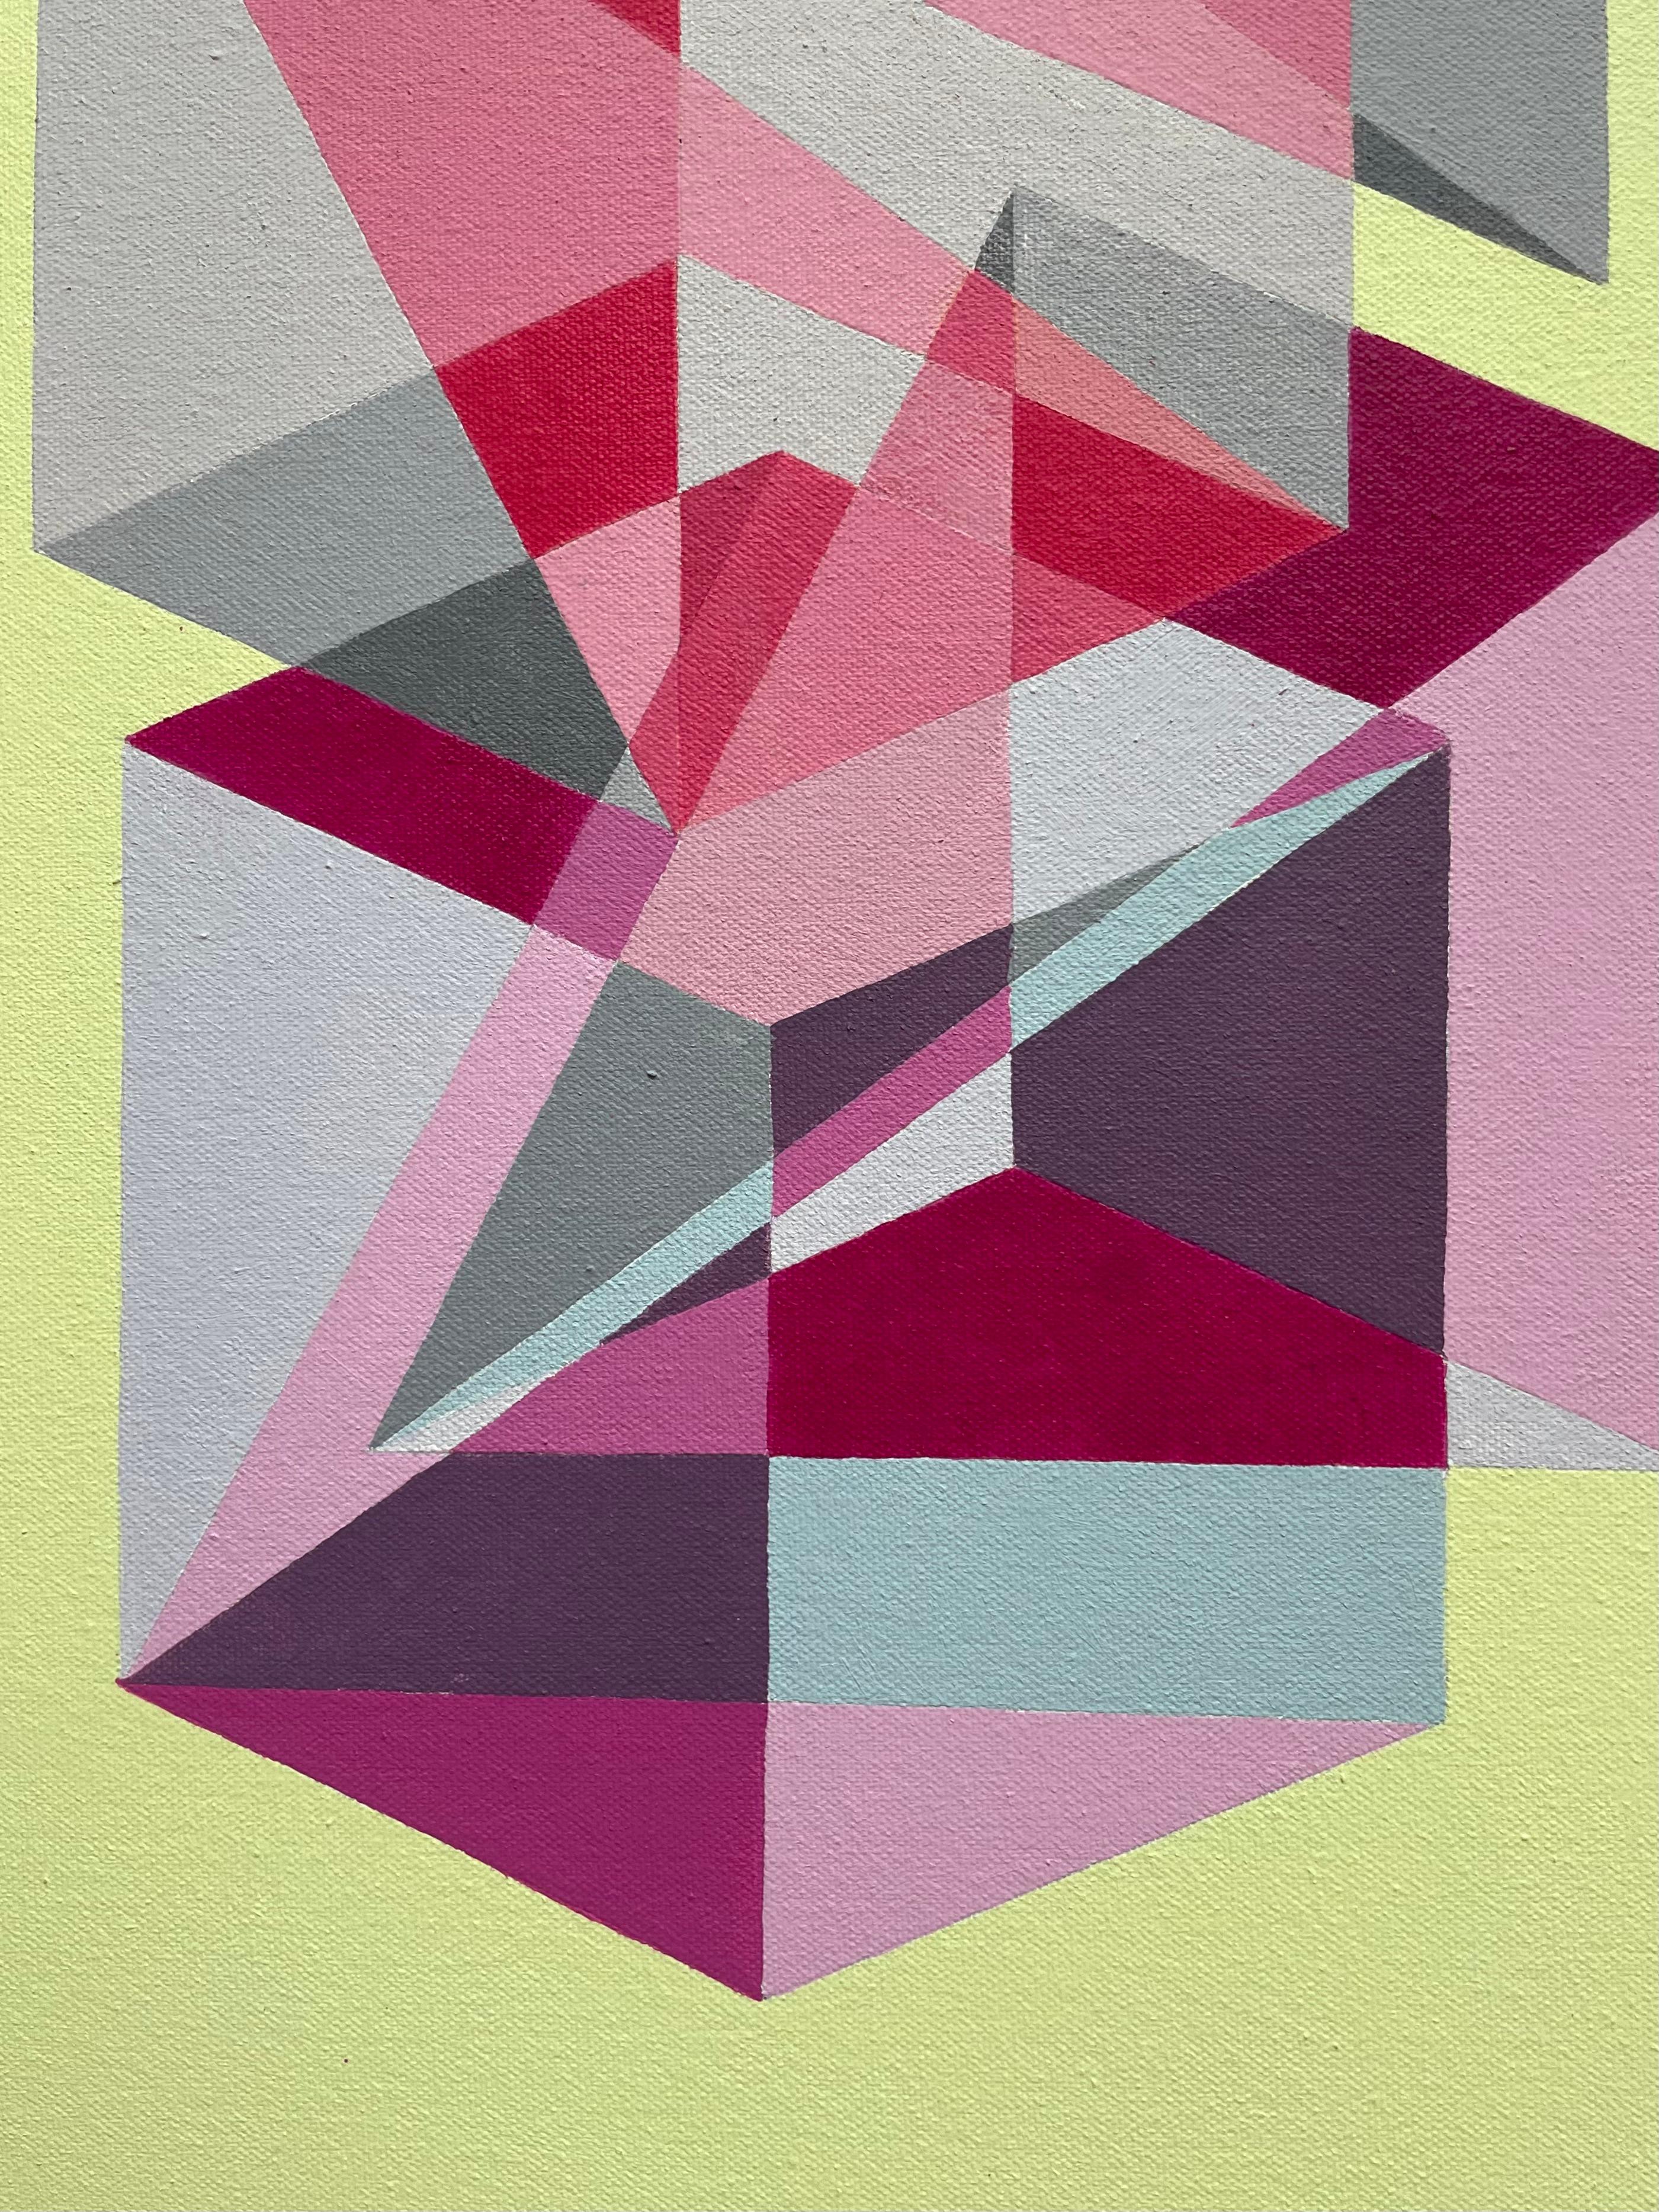 Peinture Pop Art abstraite gomtrique Op Art en jaune et rouge avec cubes et triangles - Abstrait Painting par Benjamin Weaver